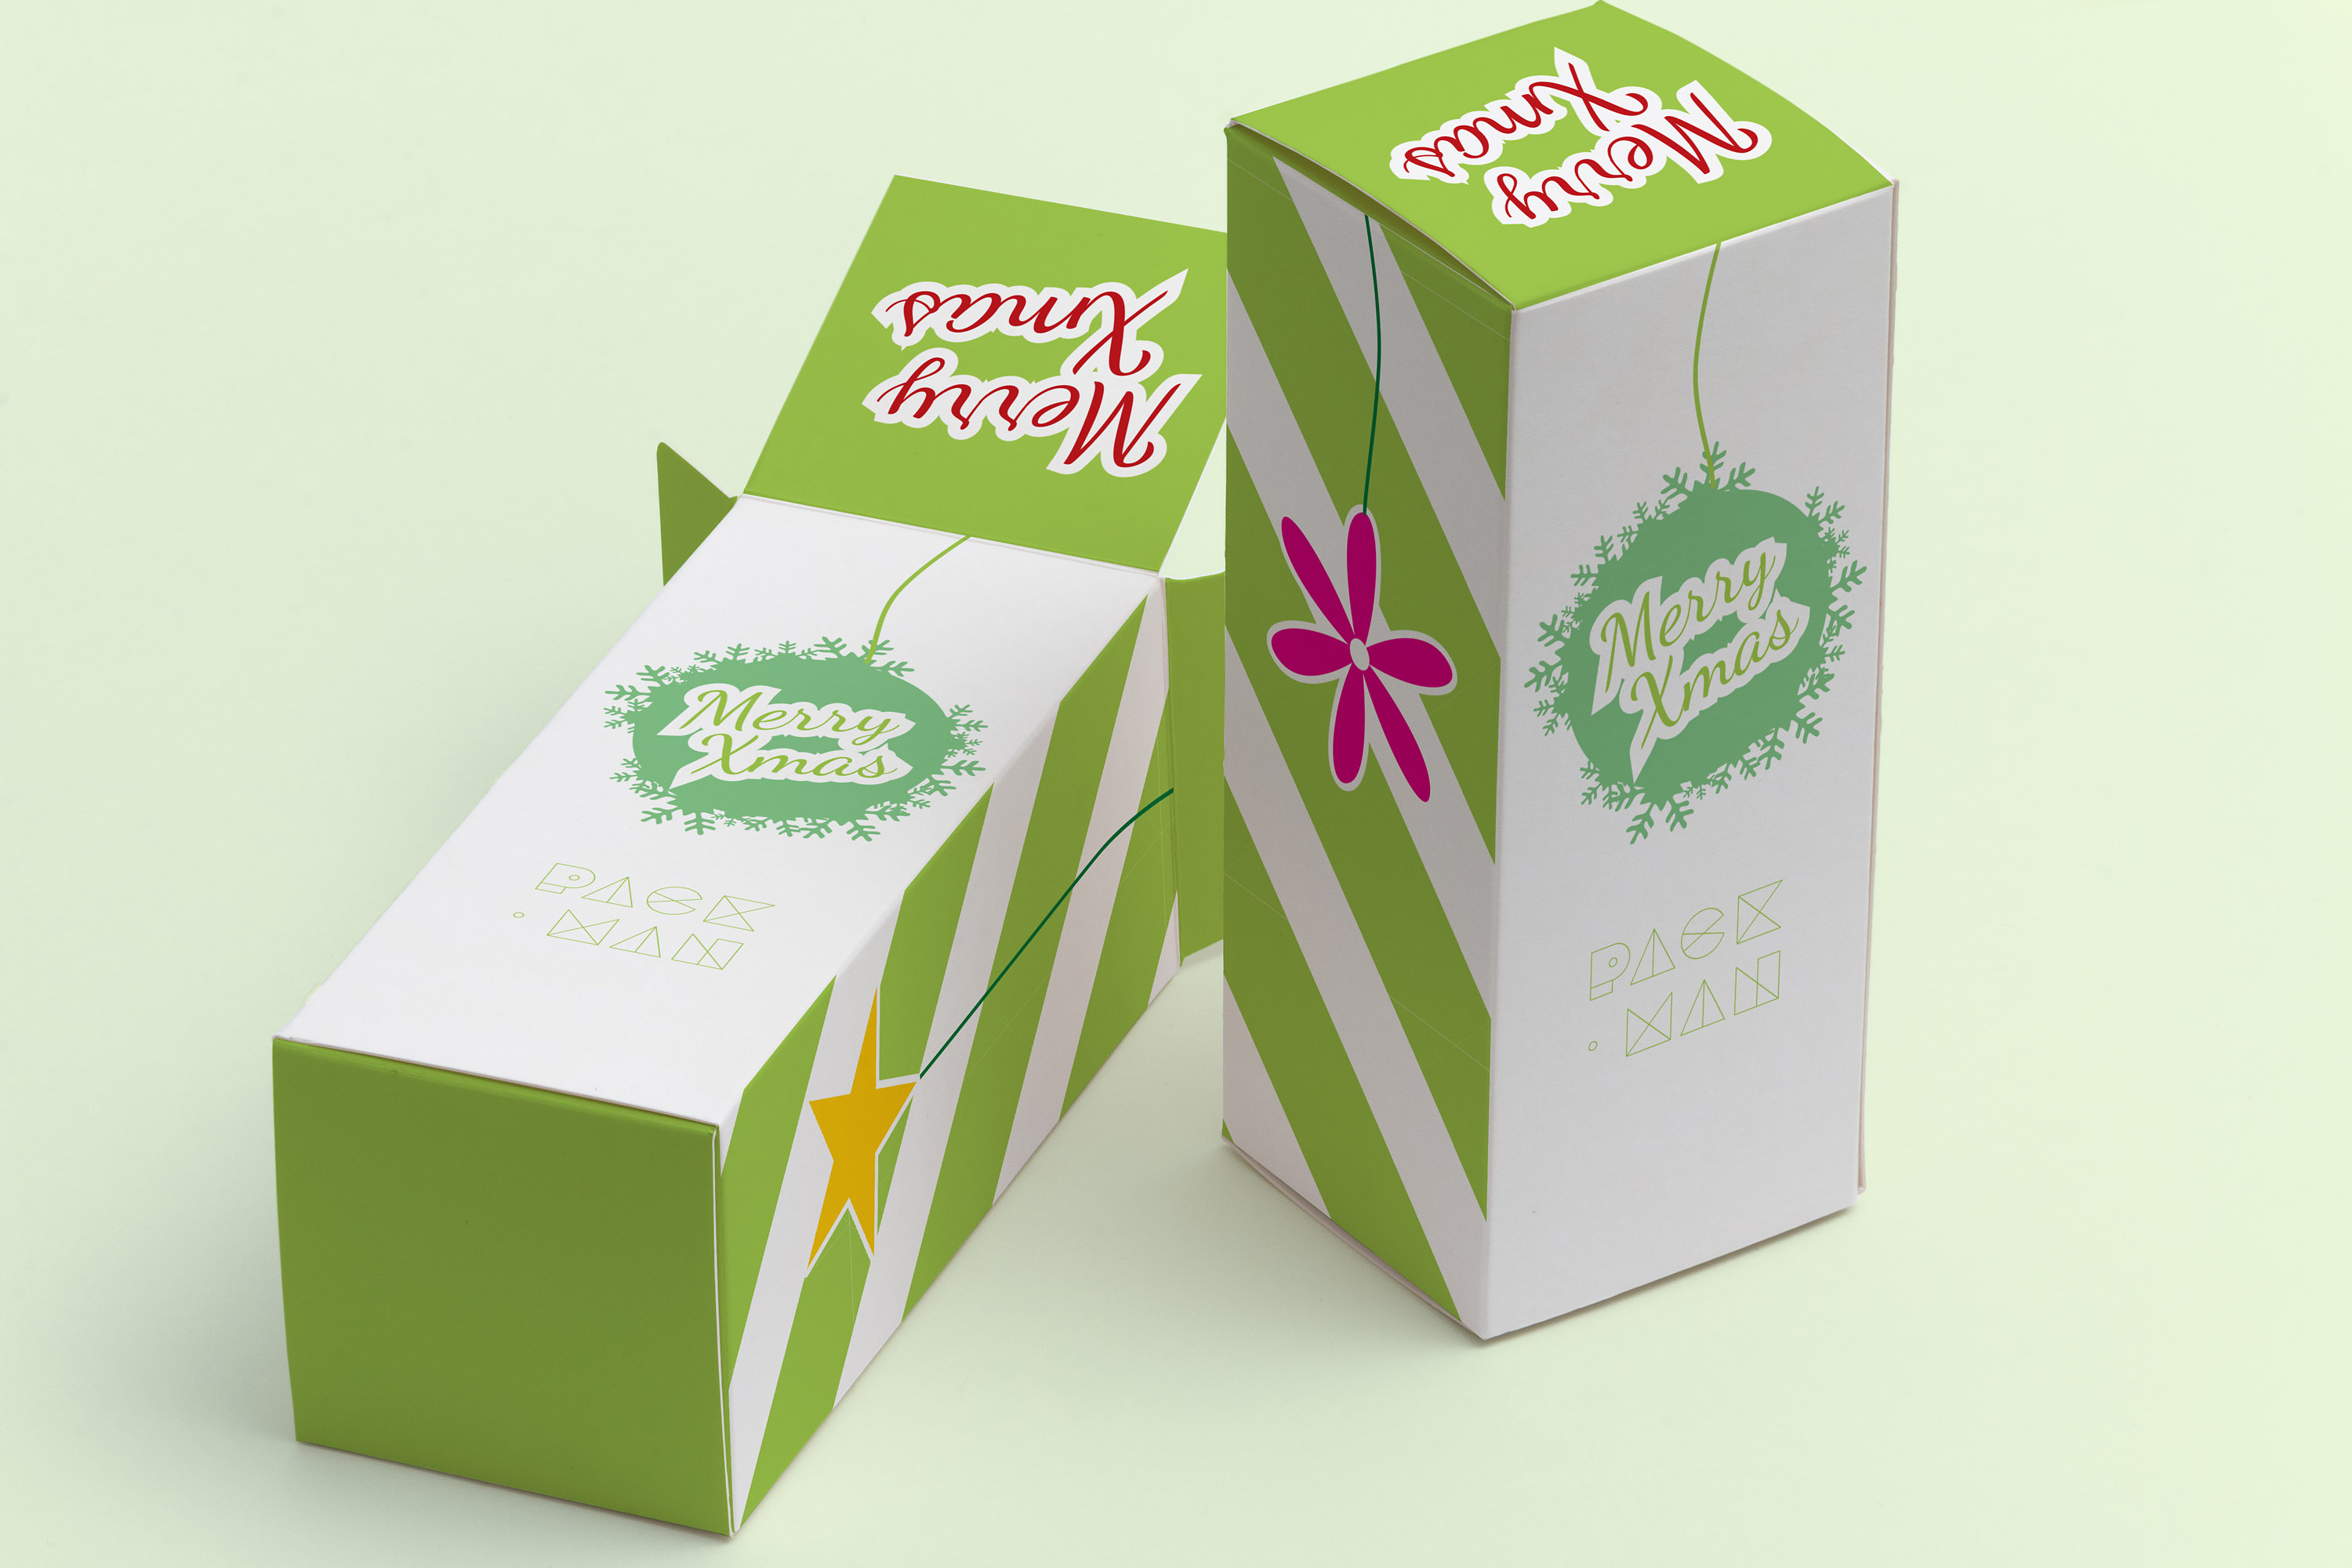 长方体产品包装盒设计效果图样机模板02 Tall Gift Box Mockup 02插图(1)